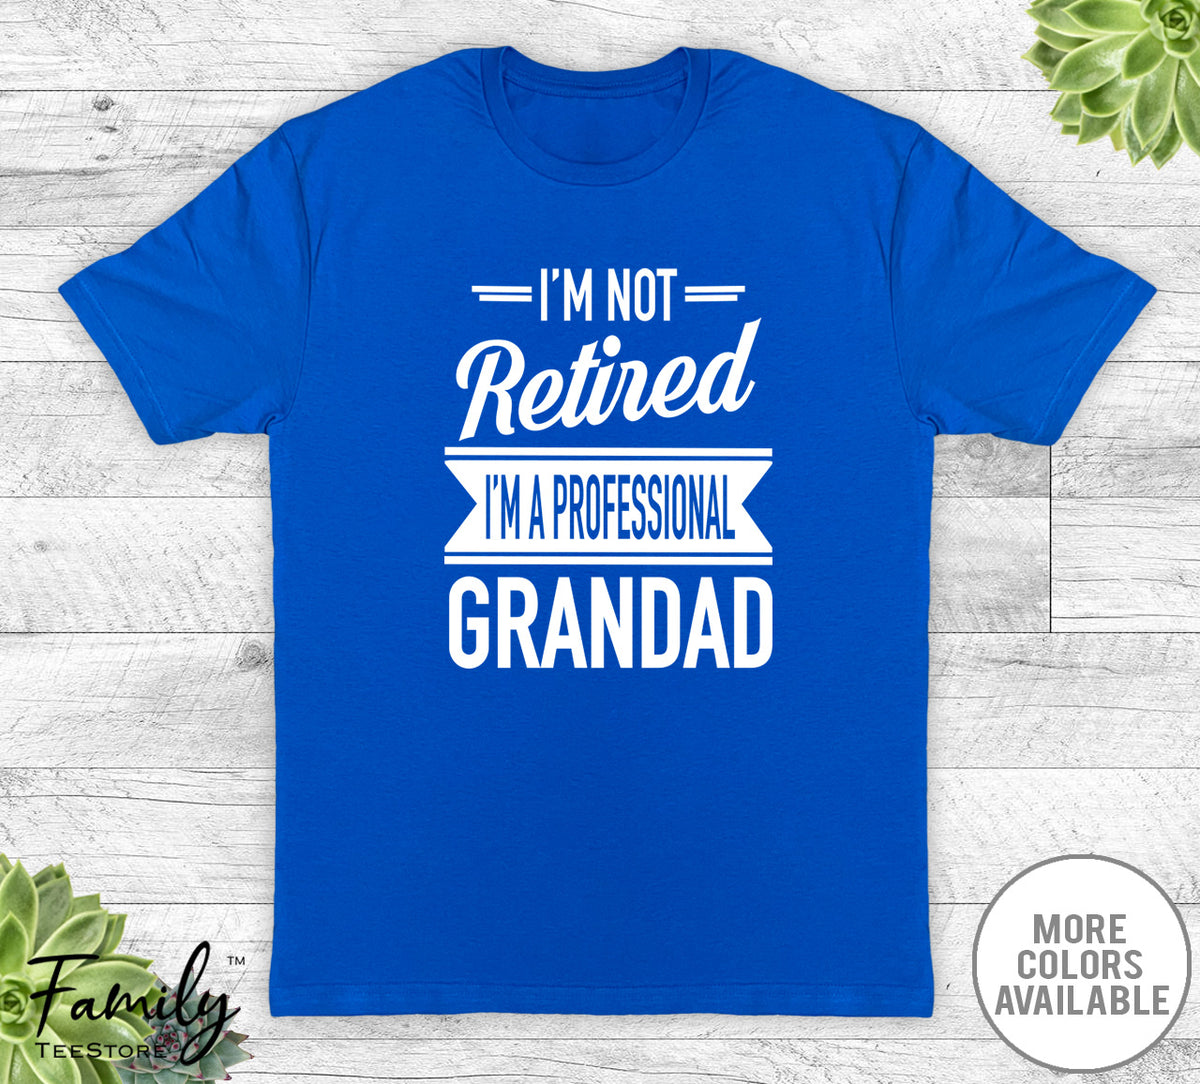 I'm Not Retired I'm A Professional Grandad - Unisex T-shirt - Grandad Shirt - Grandad Gift